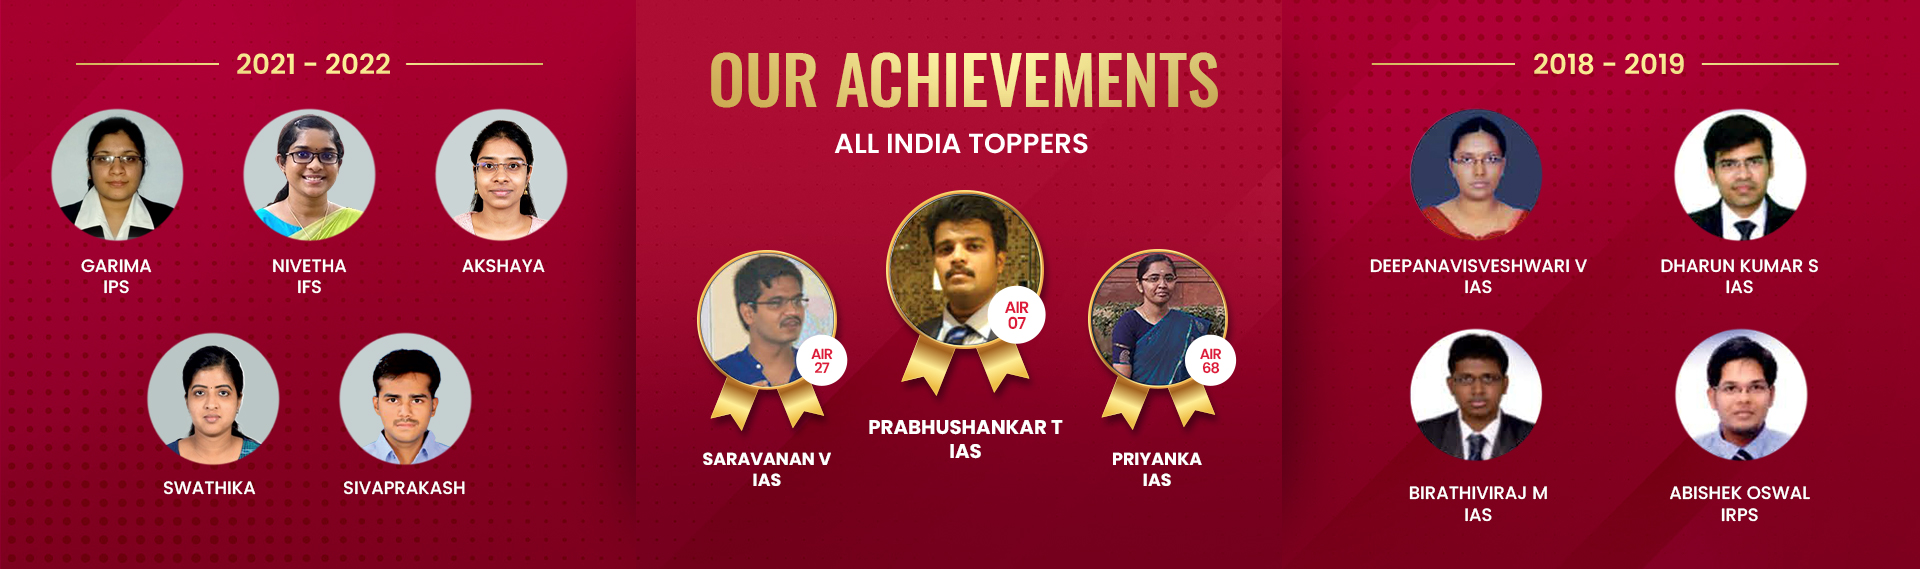 our-achievements